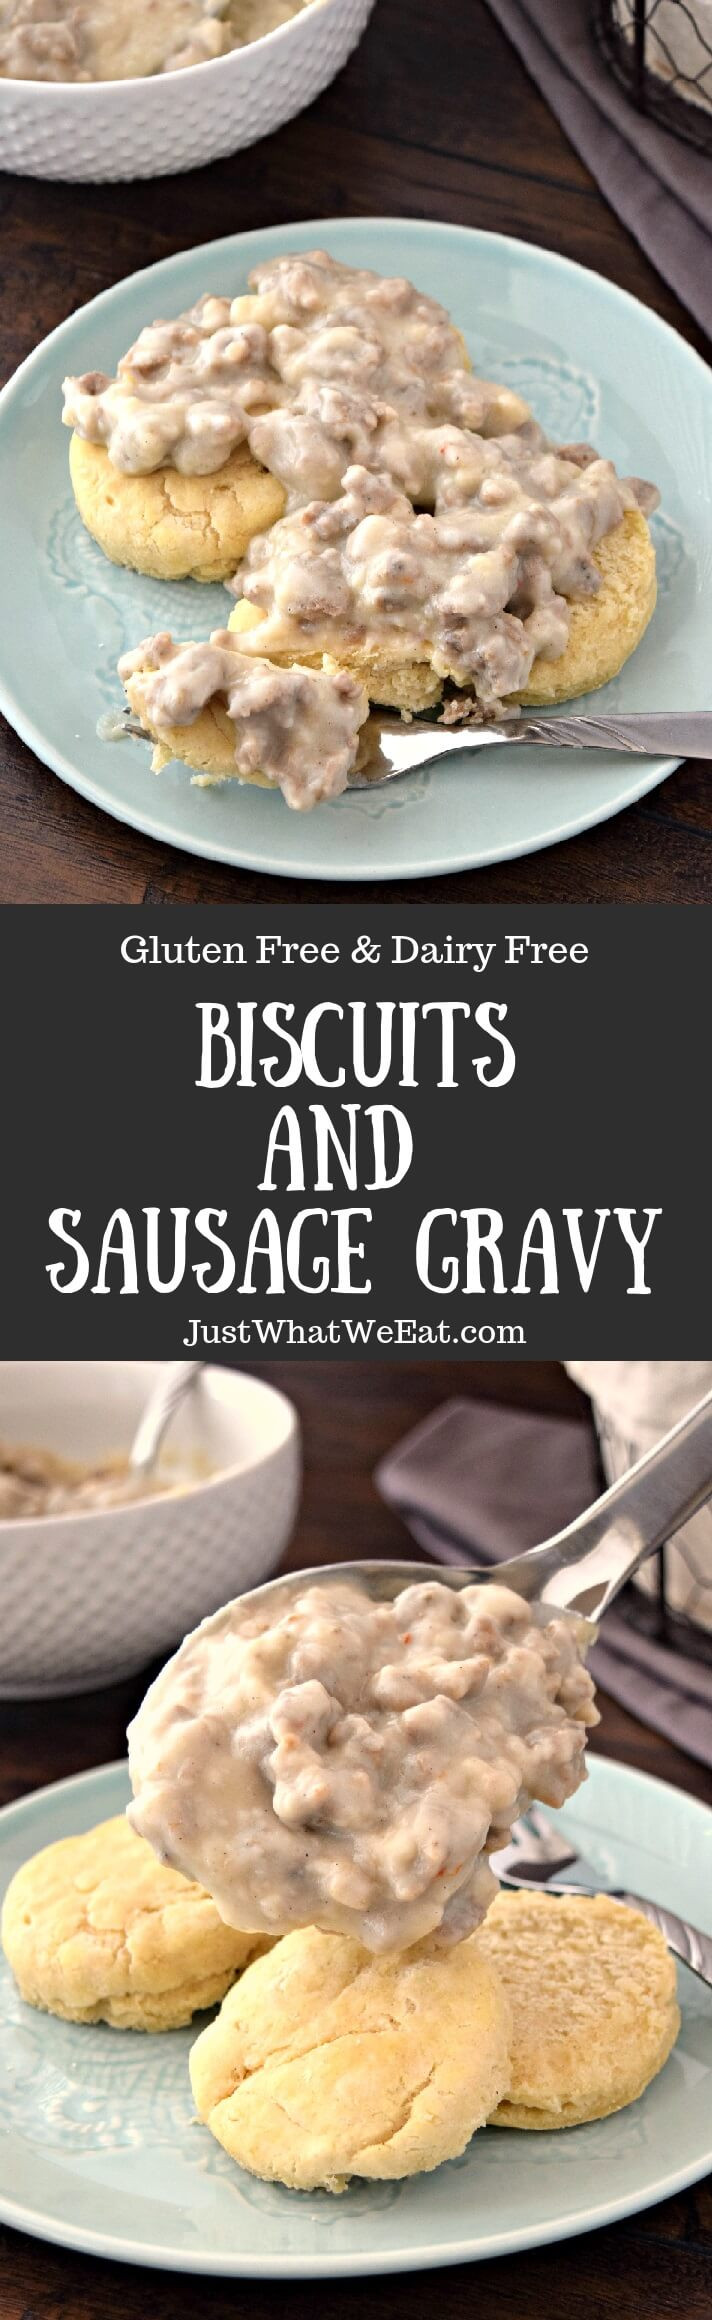 Dairy Free Sausage Gravy
 Biscuits and Sausage Gravy Gluten Free & Dairy Free